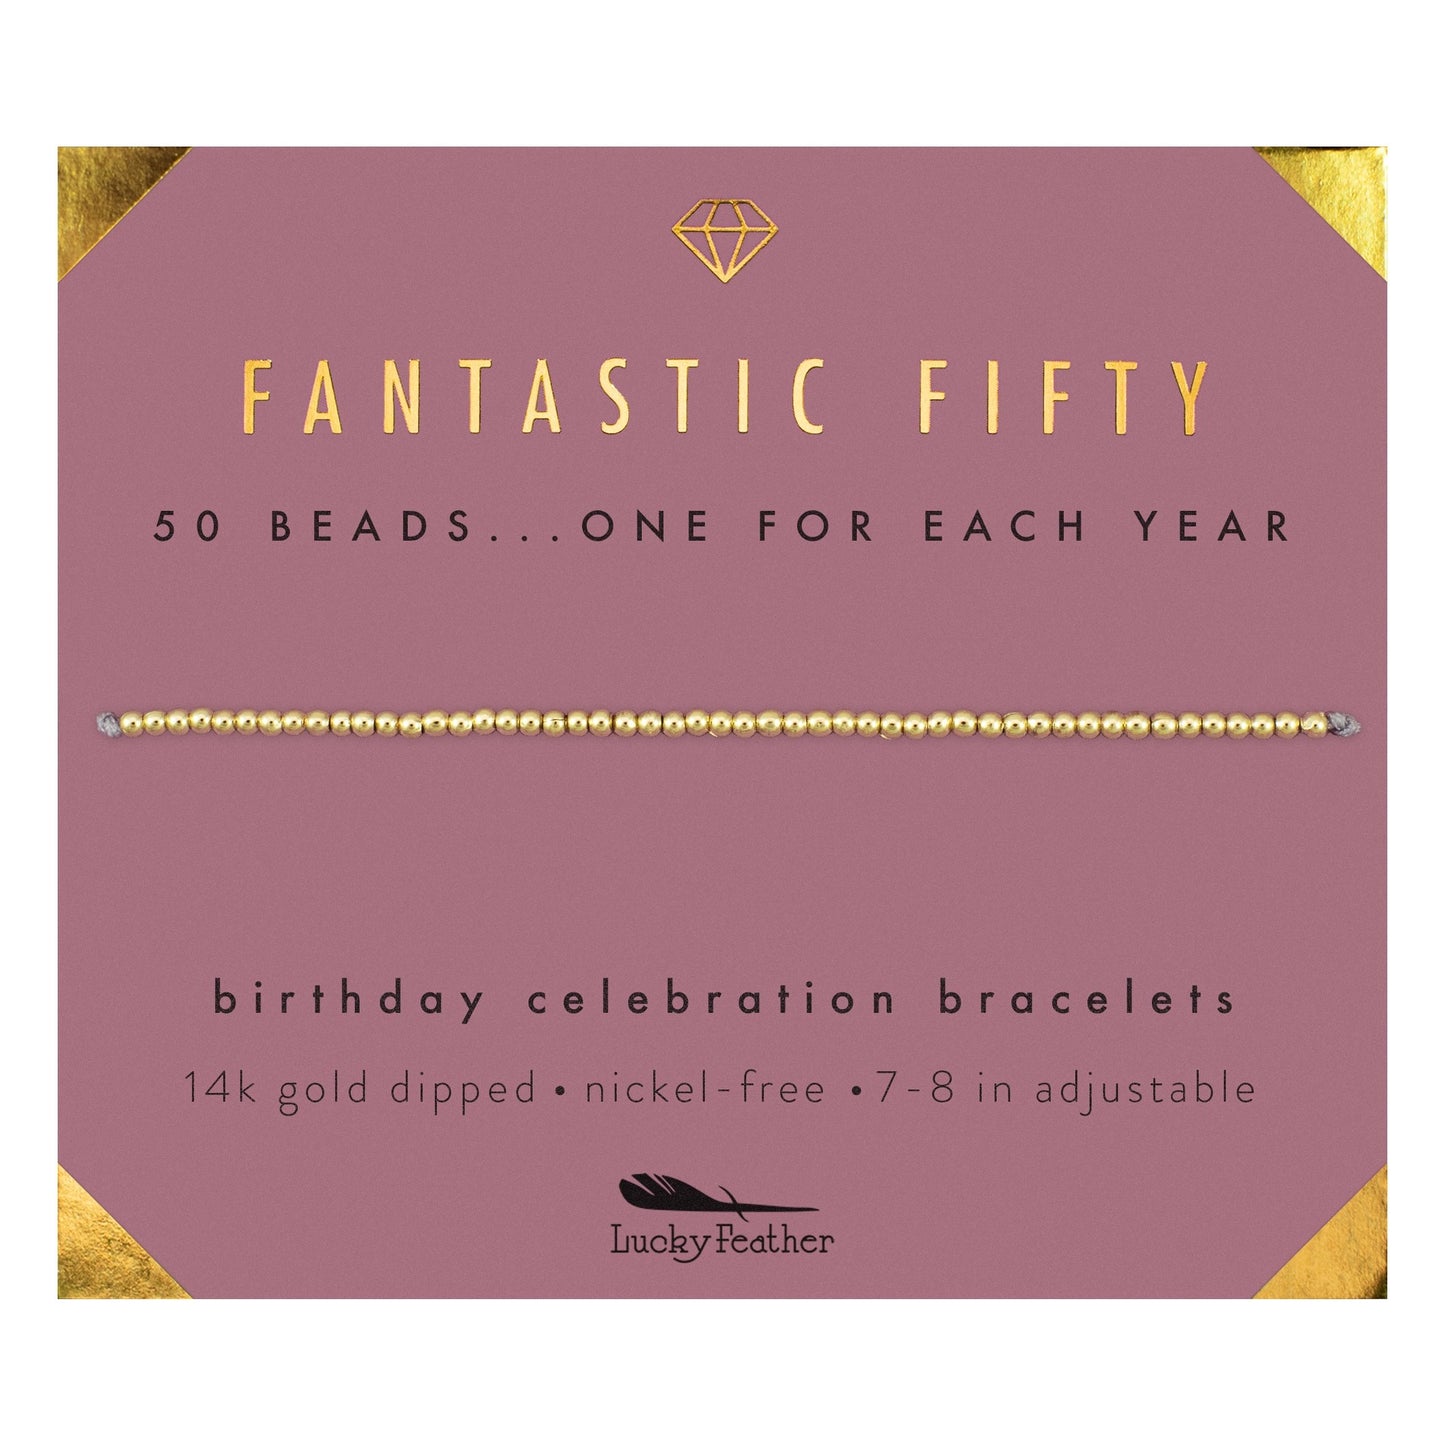 Milestone Birthday Bracelet - GOLD